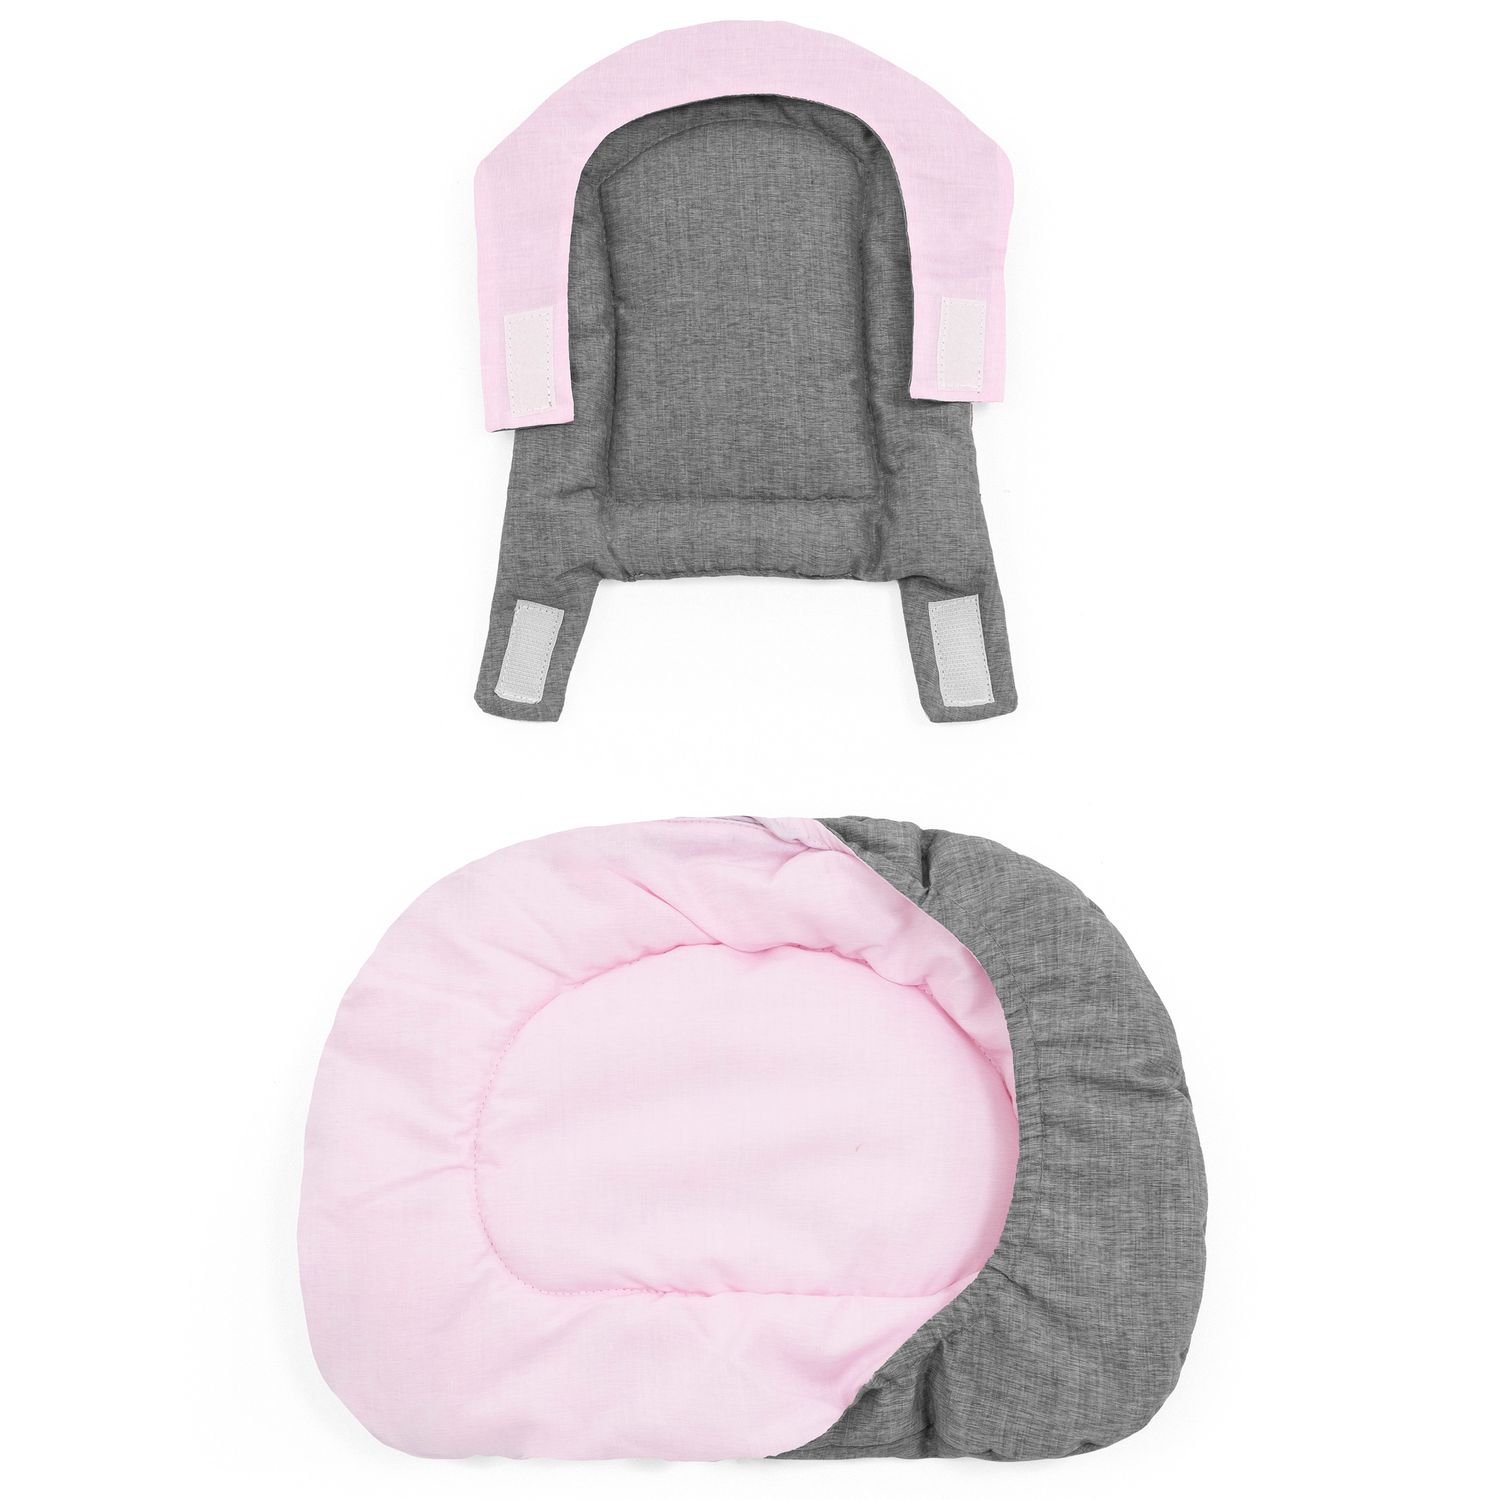 Двусторонний текстиль для стульчика Stokke Nomi, розово-серый (625701) - фото 2